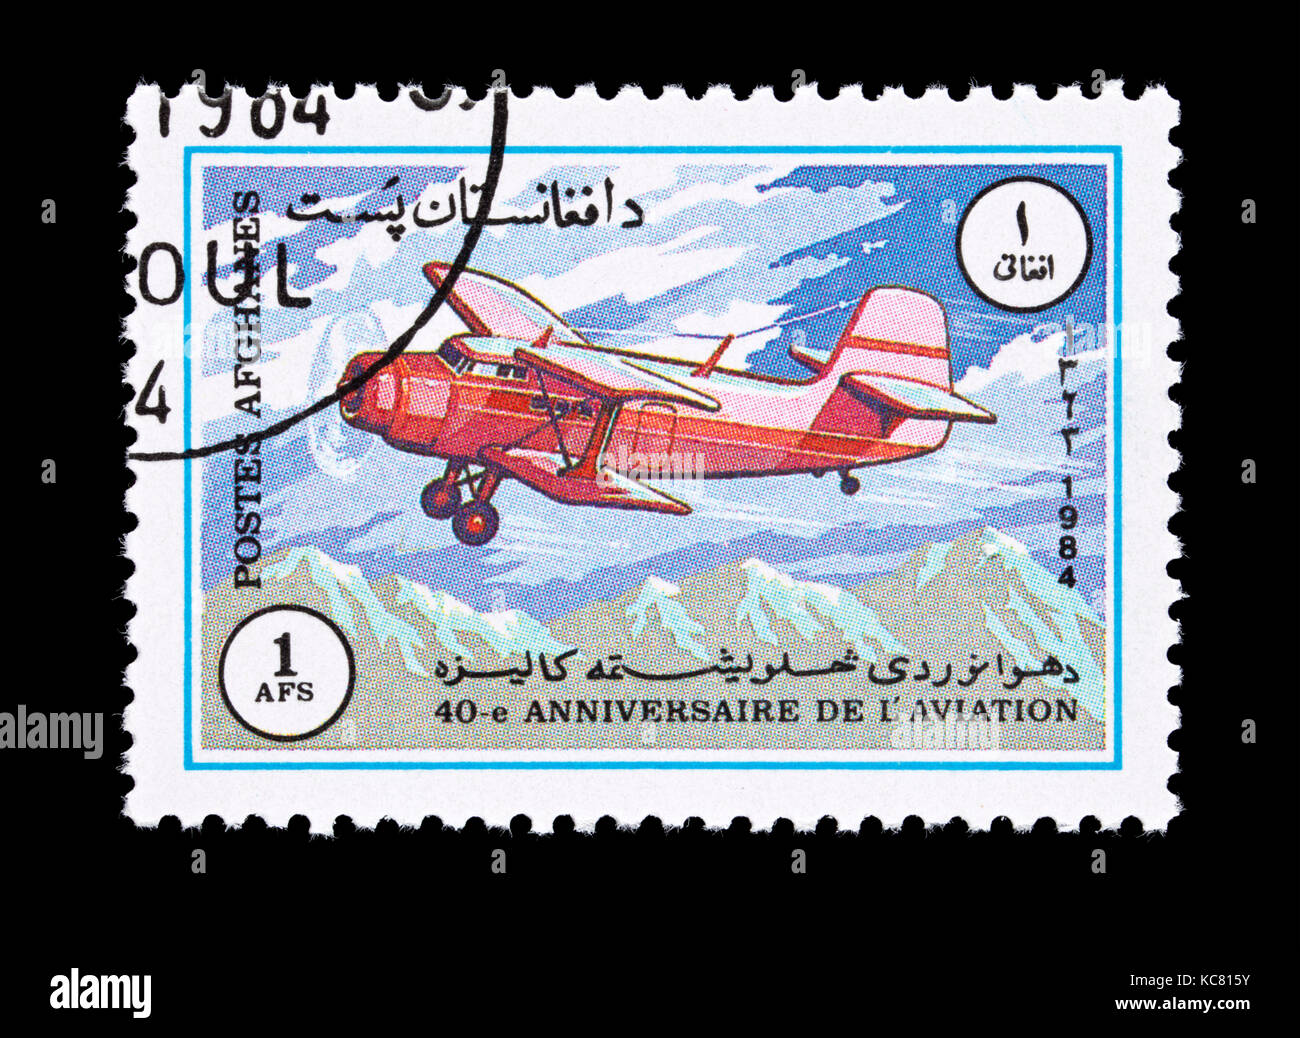 Timbre-poste d'Afghanistan représentant un Antonov AN-2 avion civil soviétique. Banque D'Images